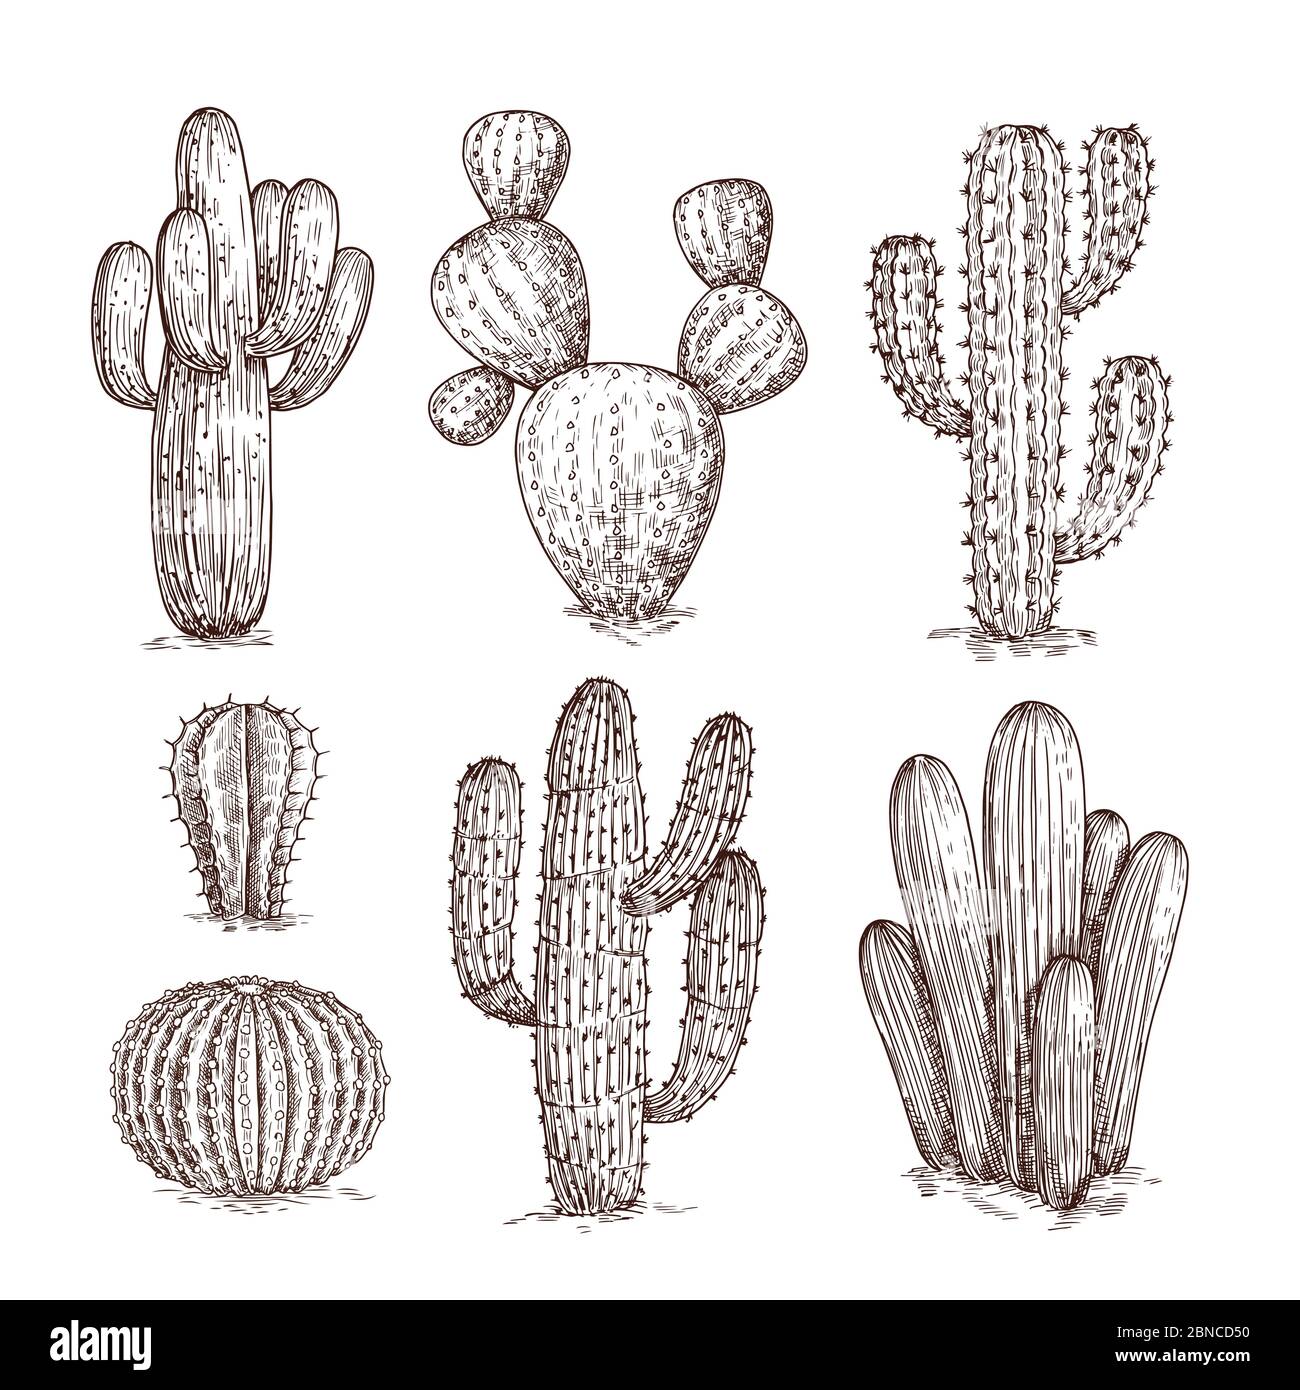 Cactus dessinés à la main. Plantes mexicaines cactus du désert occidental en style esquisse. Cactus, ensemble de vecteurs doodle. Illustration de cactus sauvages avec épine Illustration de Vecteur